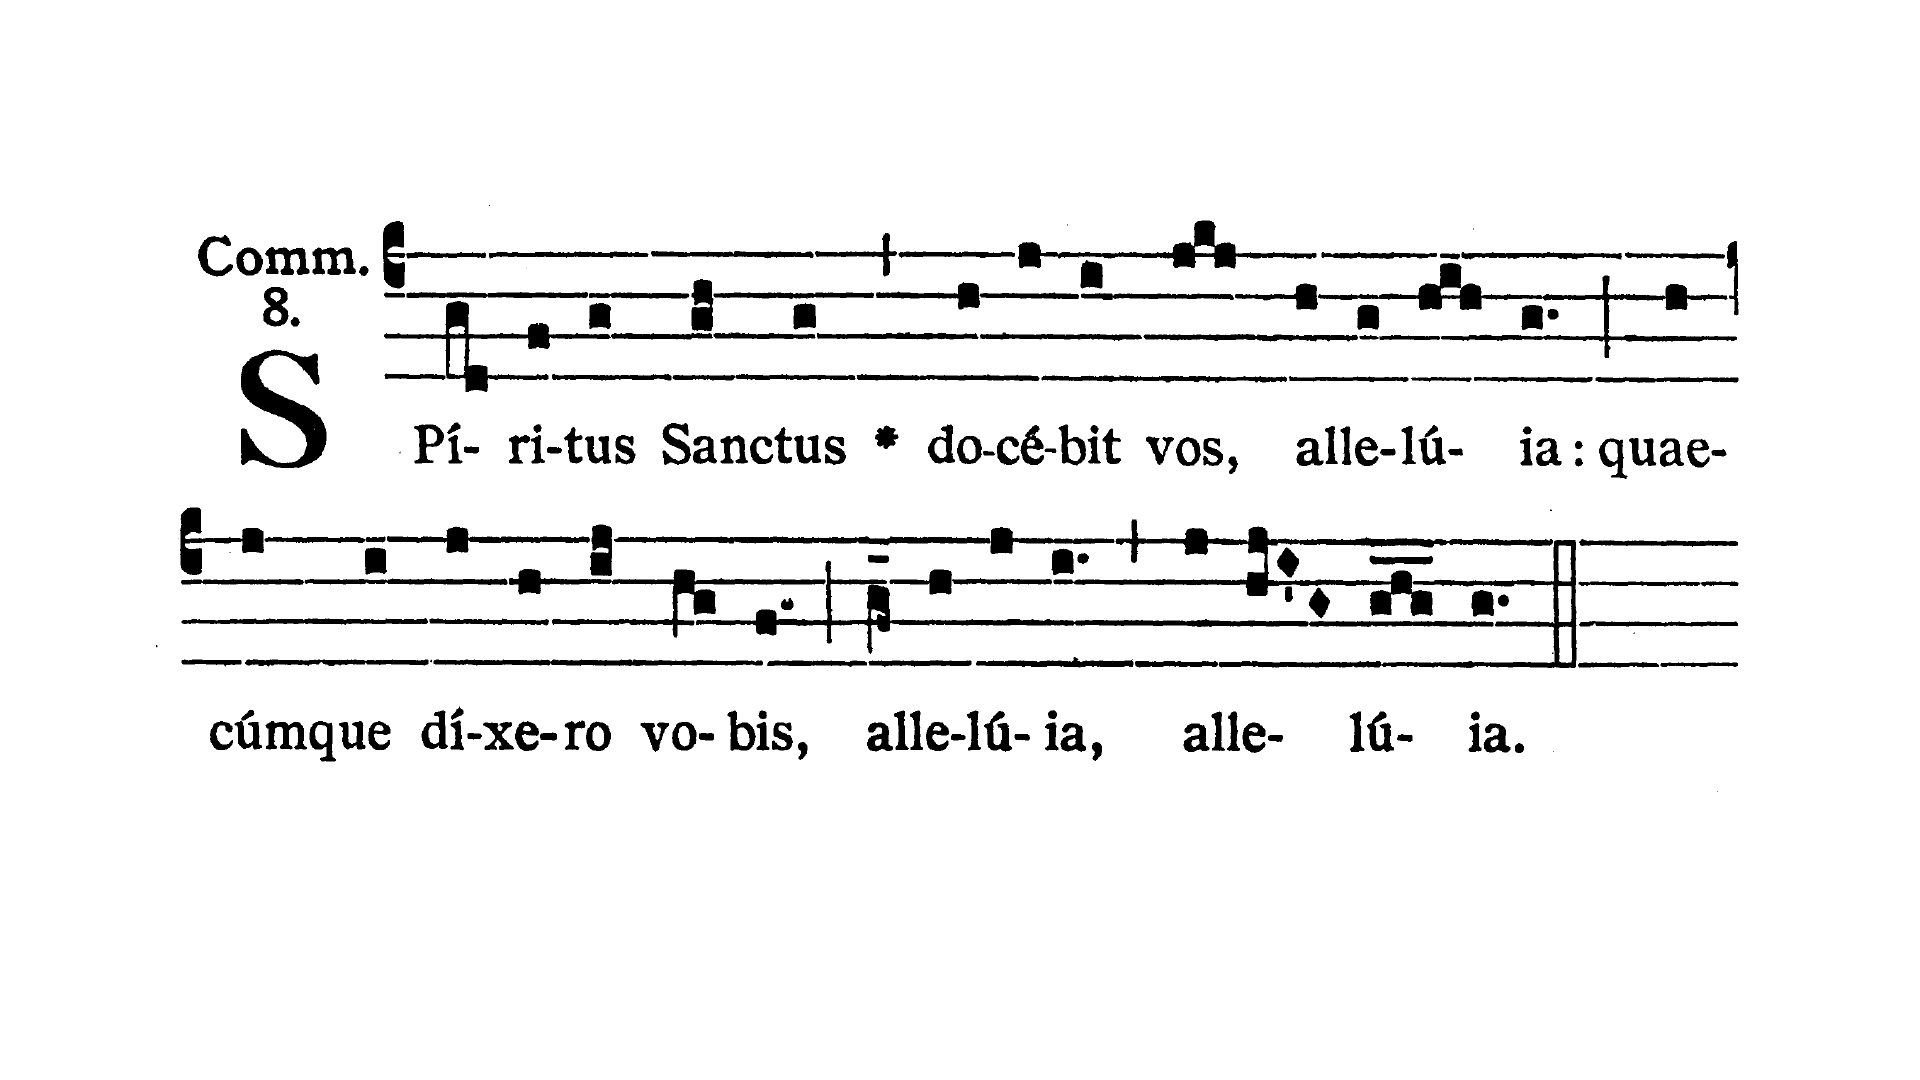 Feria secunda infra Octavam Pentecostes (Poniedziałek w oktawie Zesłania Ducha Świętego) - Communio (Spiritus Sanctus)